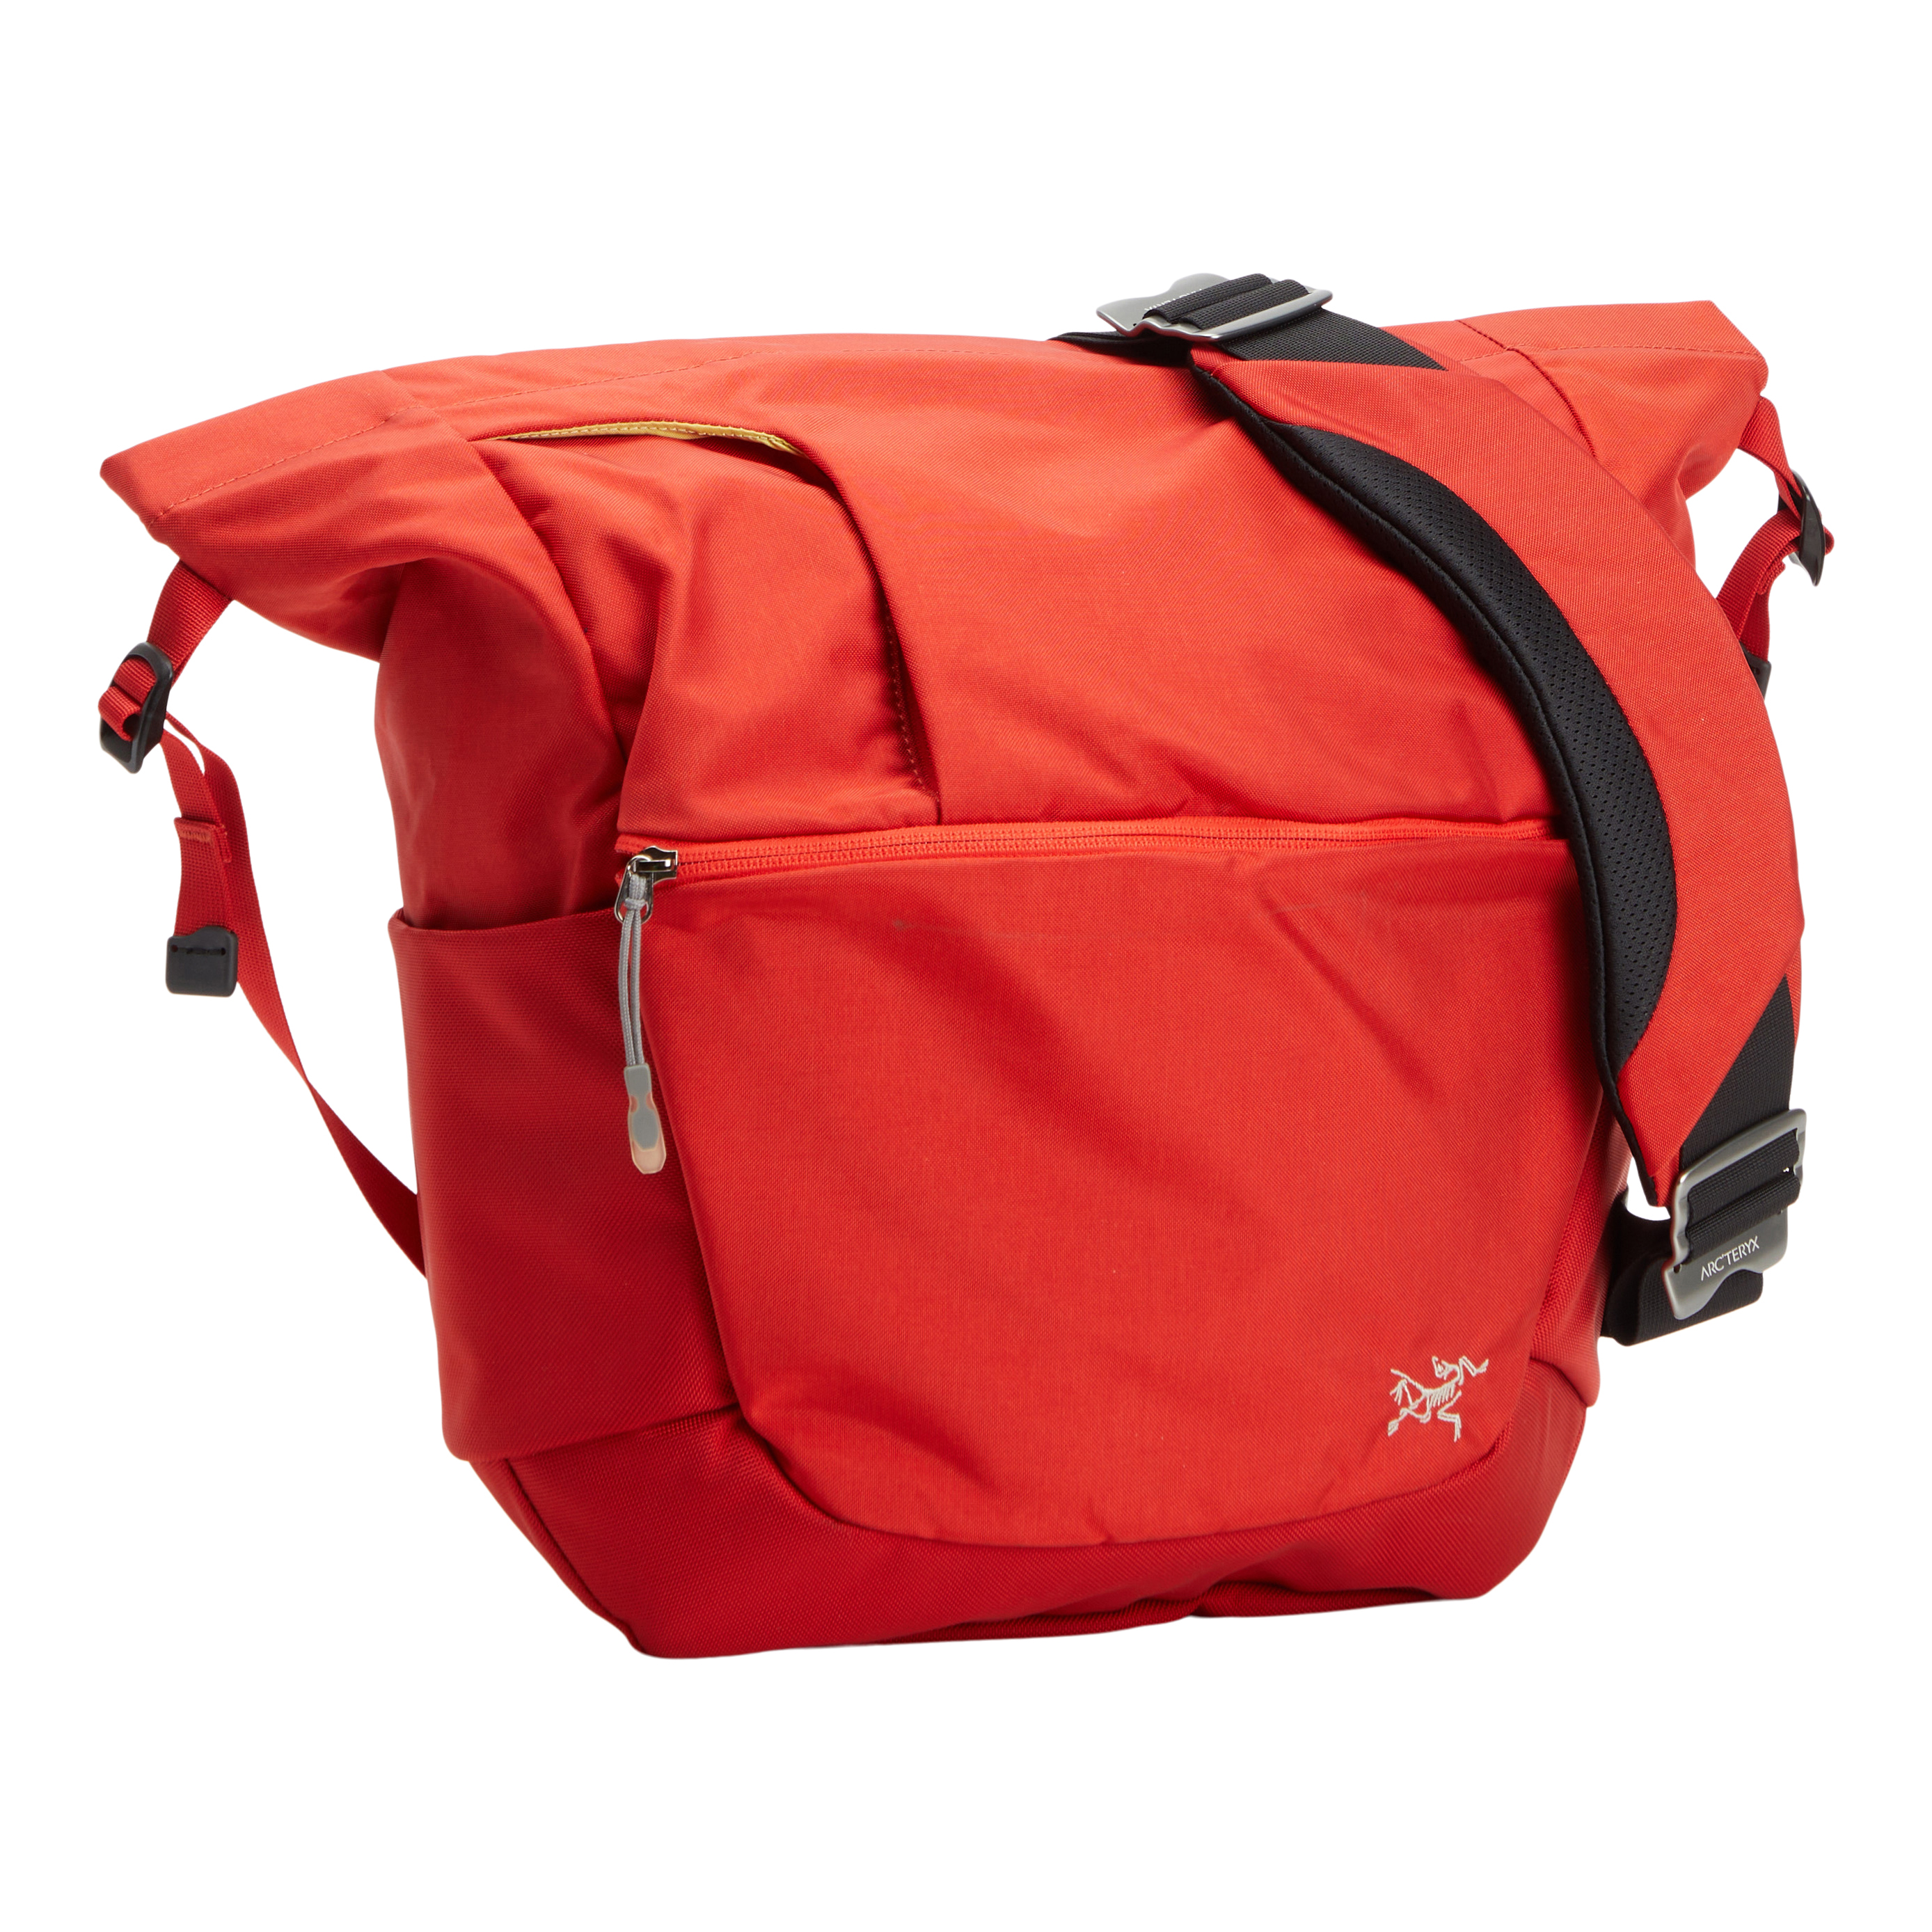 Used Mistral 16 Side Bag | Arc'teryx ReGEAR}